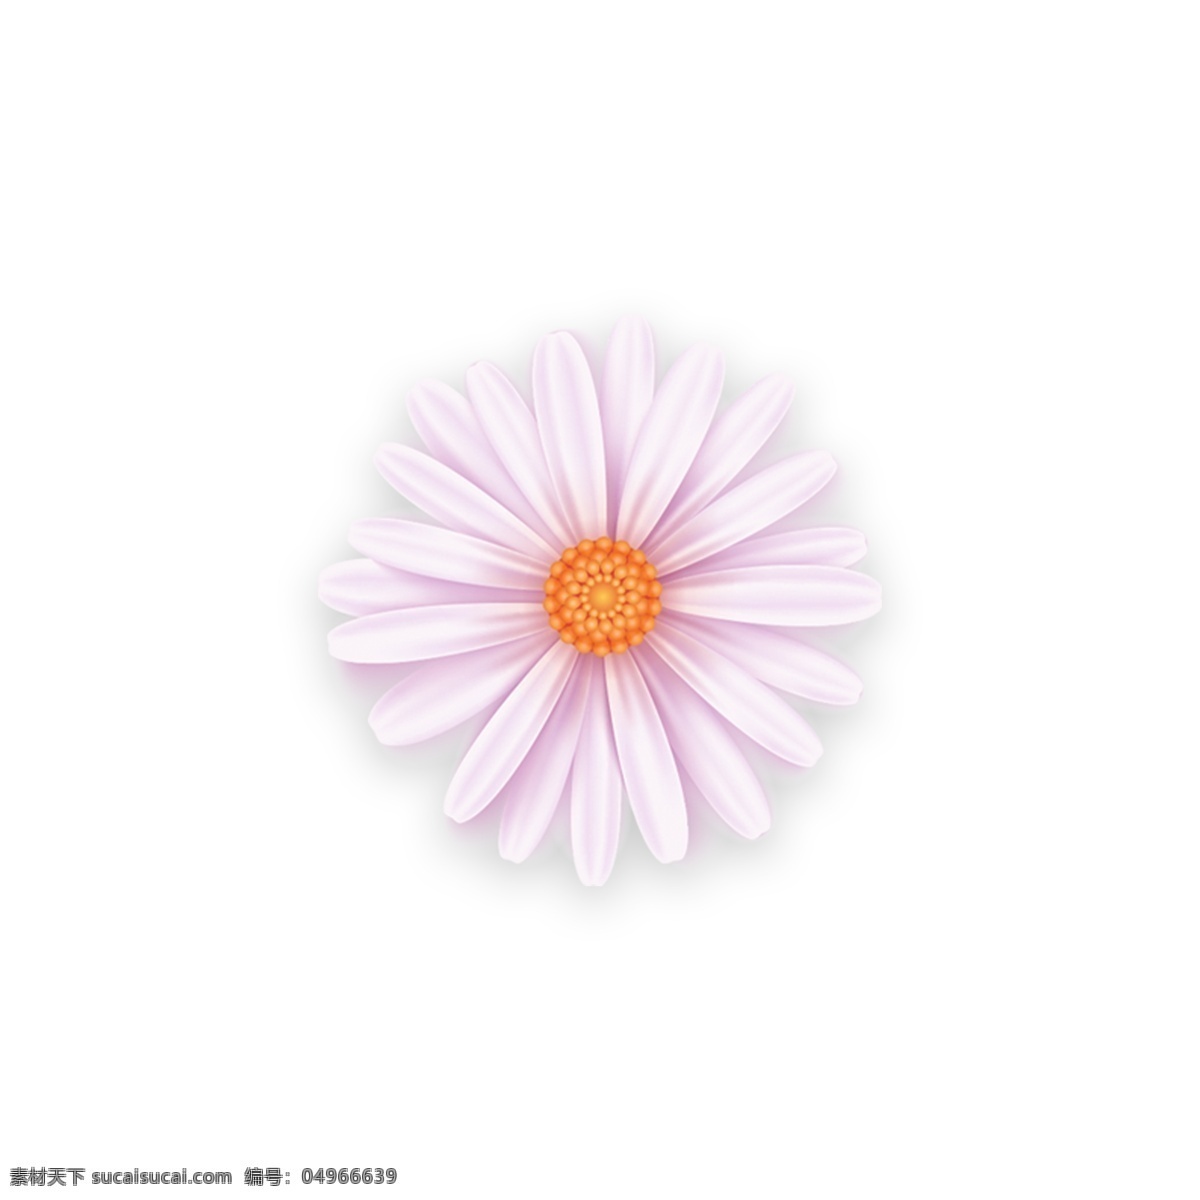 花 浅 粉色 装饰 元素 装饰图案 免抠 粉色系 浅粉色 花朵 简约